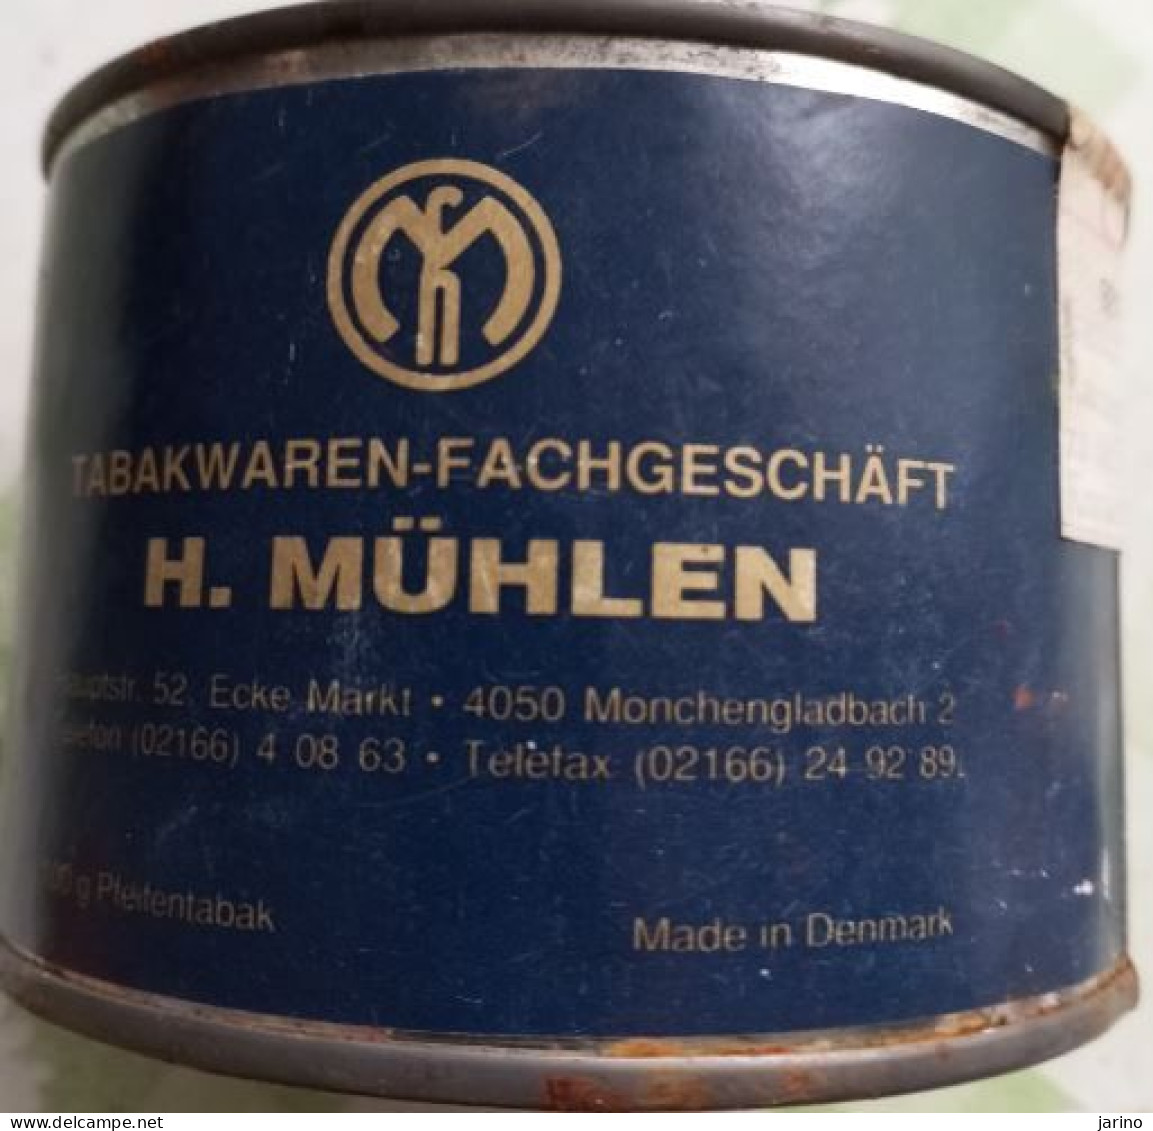 Ancient Empty Metal Tobacco Box Tabakwaren-Fachgeschäft H. MüHLEN, Made In Denmark, Average 10 Cm - Schnupftabakdosen (leer)